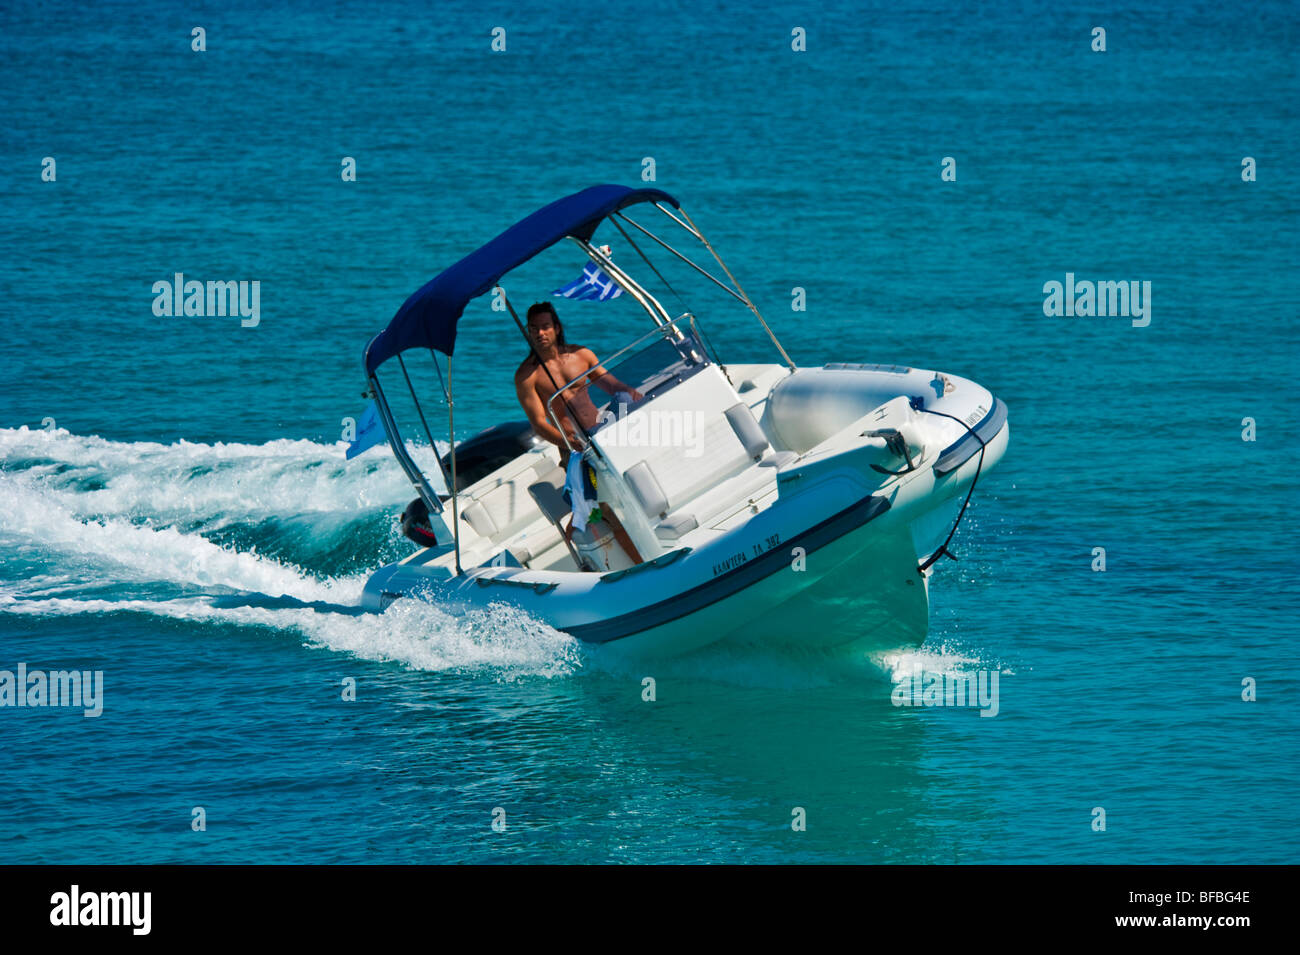 Bateau gonflable dans l'eau bleu en courbe, Saroic Golf, Grèce Banque D'Images